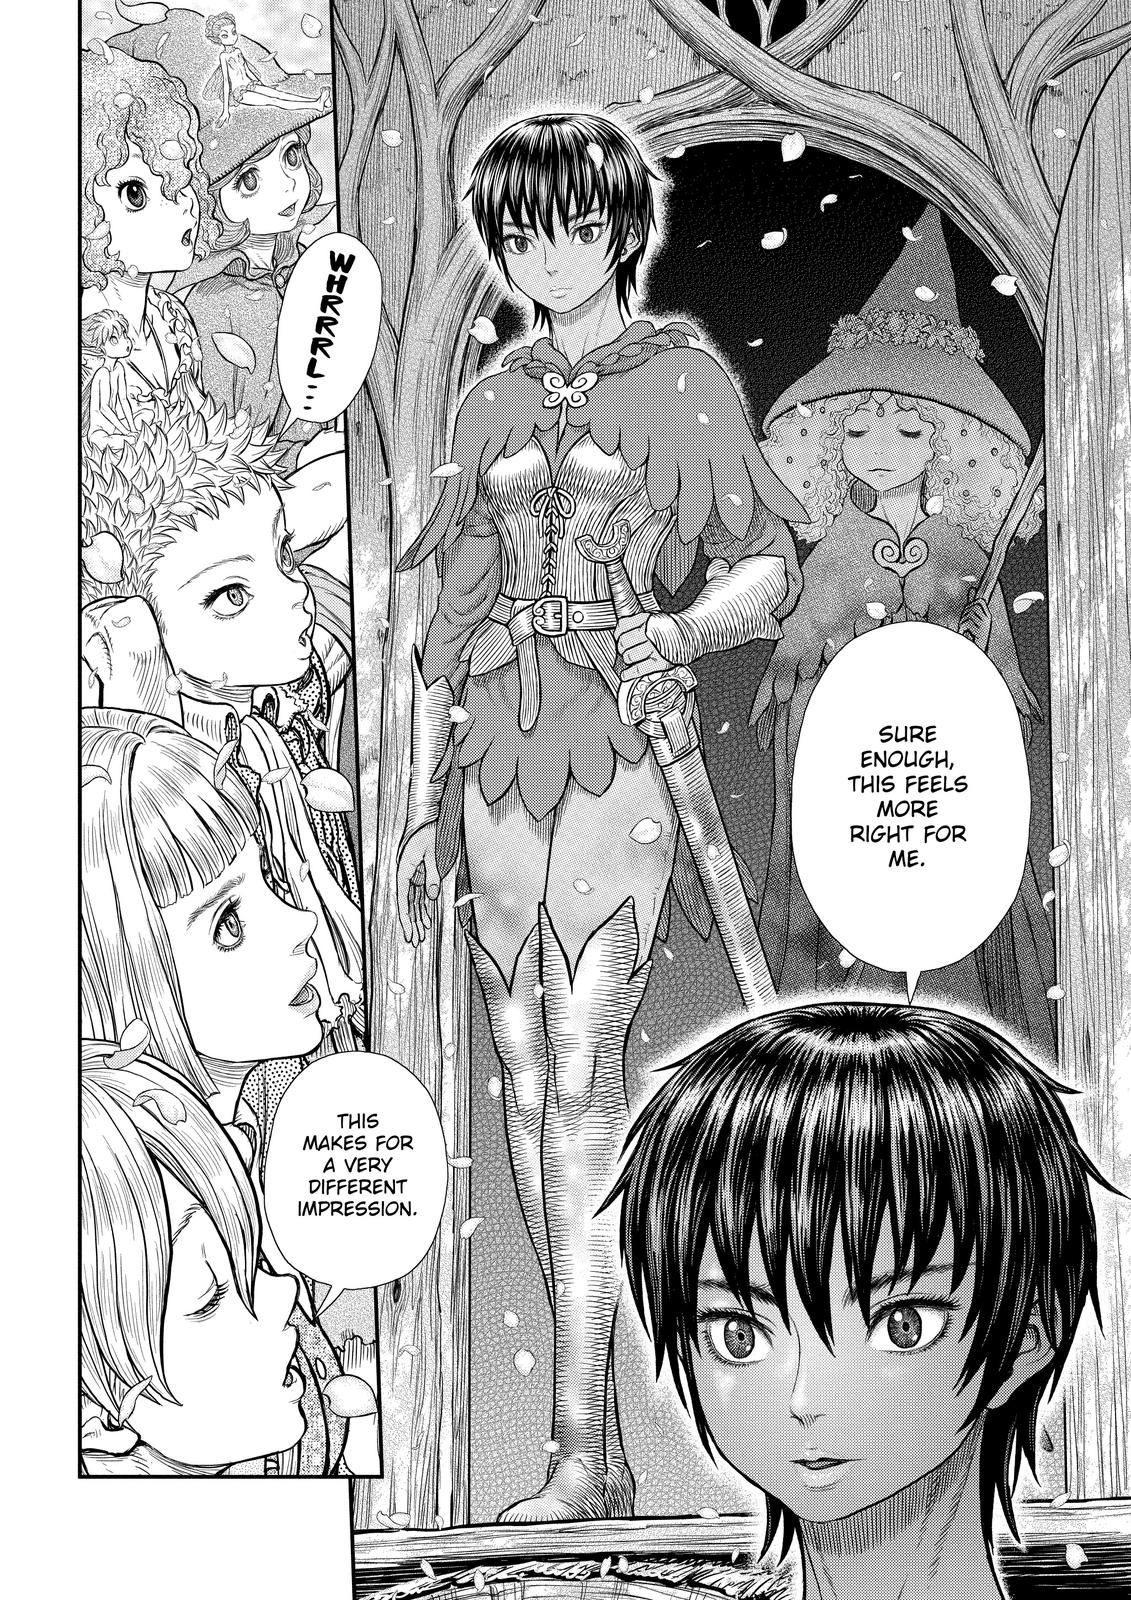 Berserk Manga Chapter 359 image 02